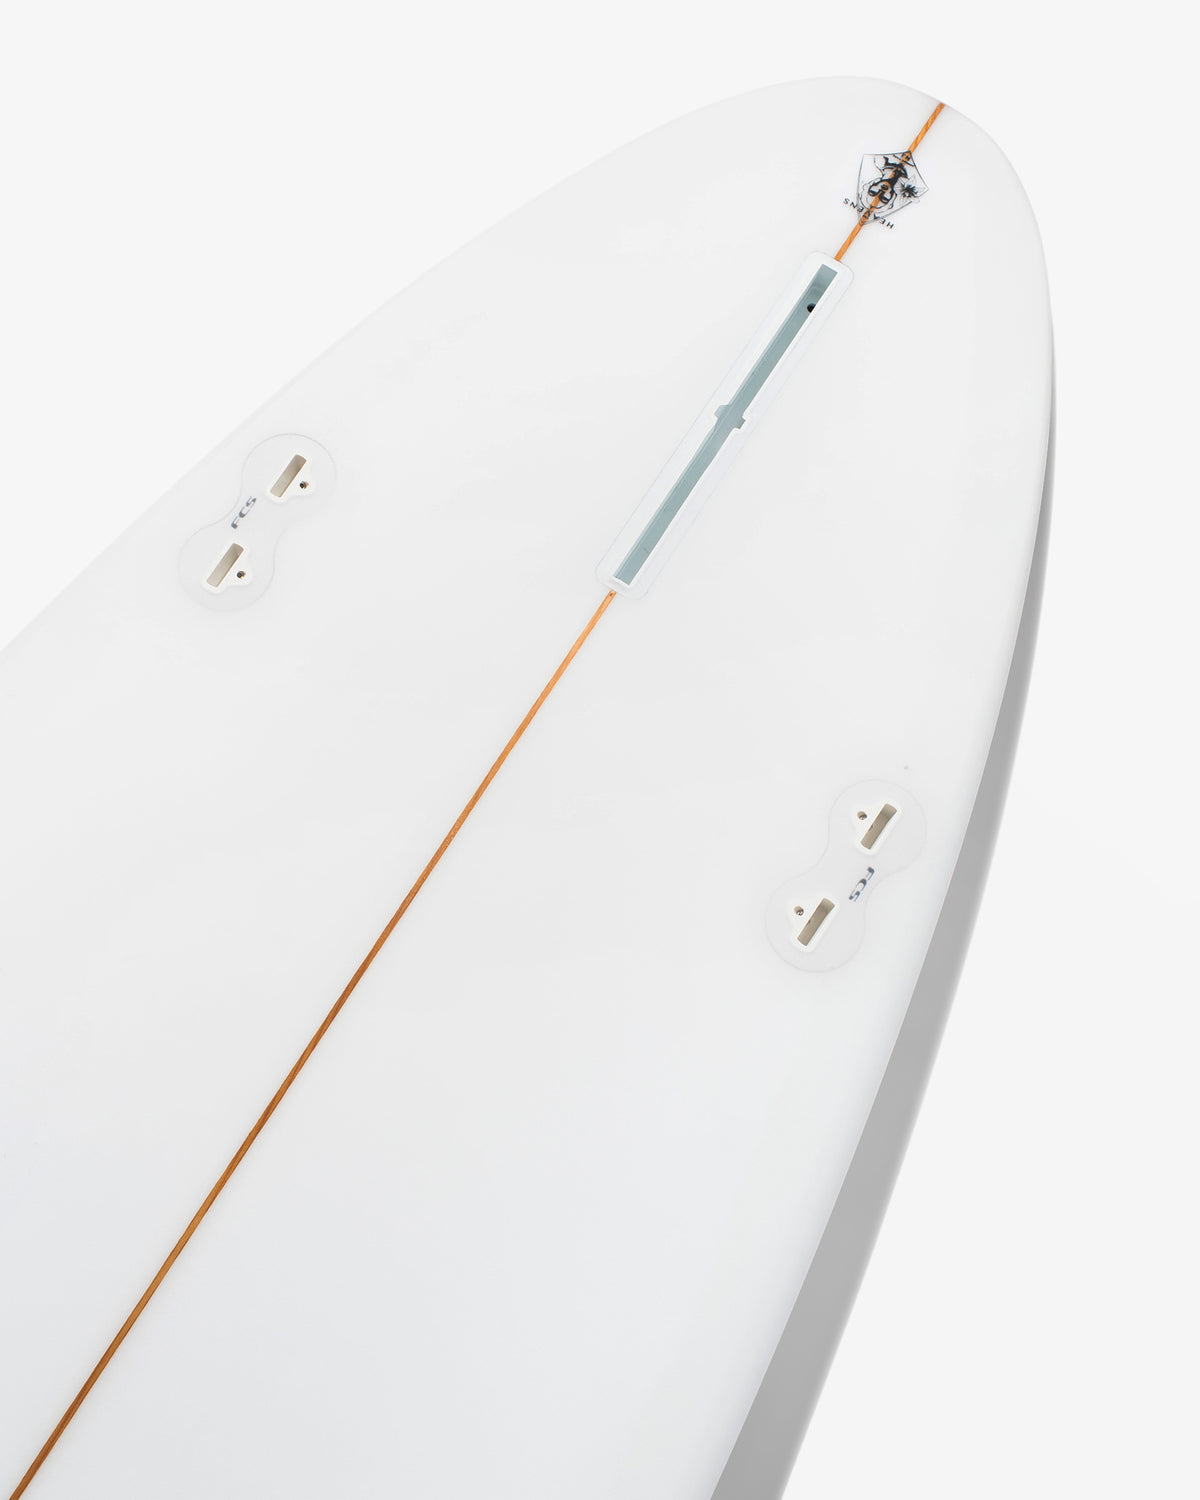 Plaid Surfboard